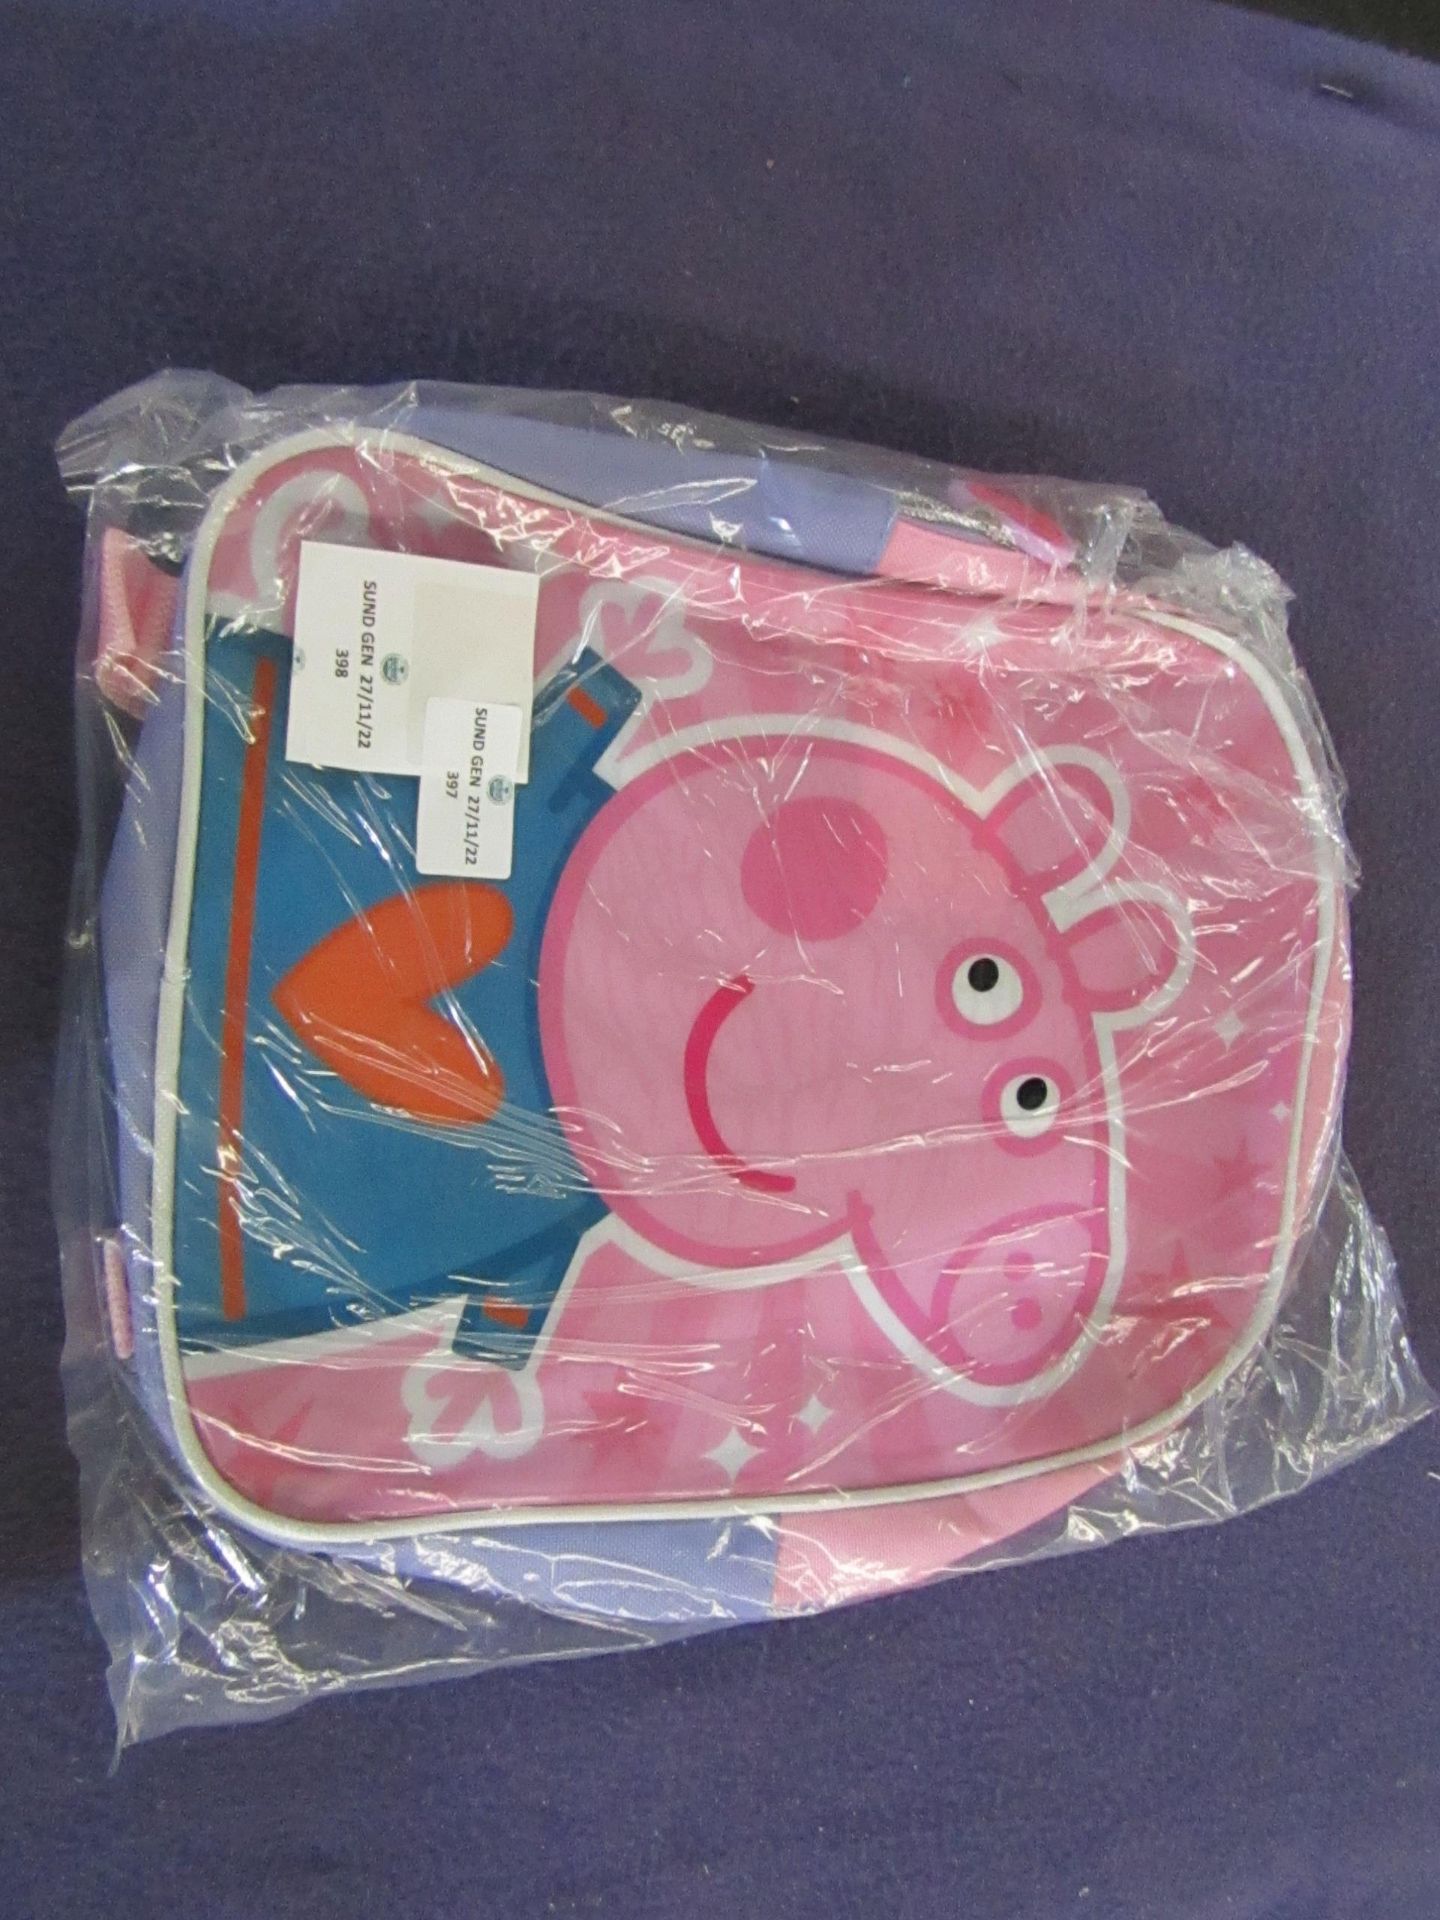 Peppa Pig - Backpack - Unused & Packaged.